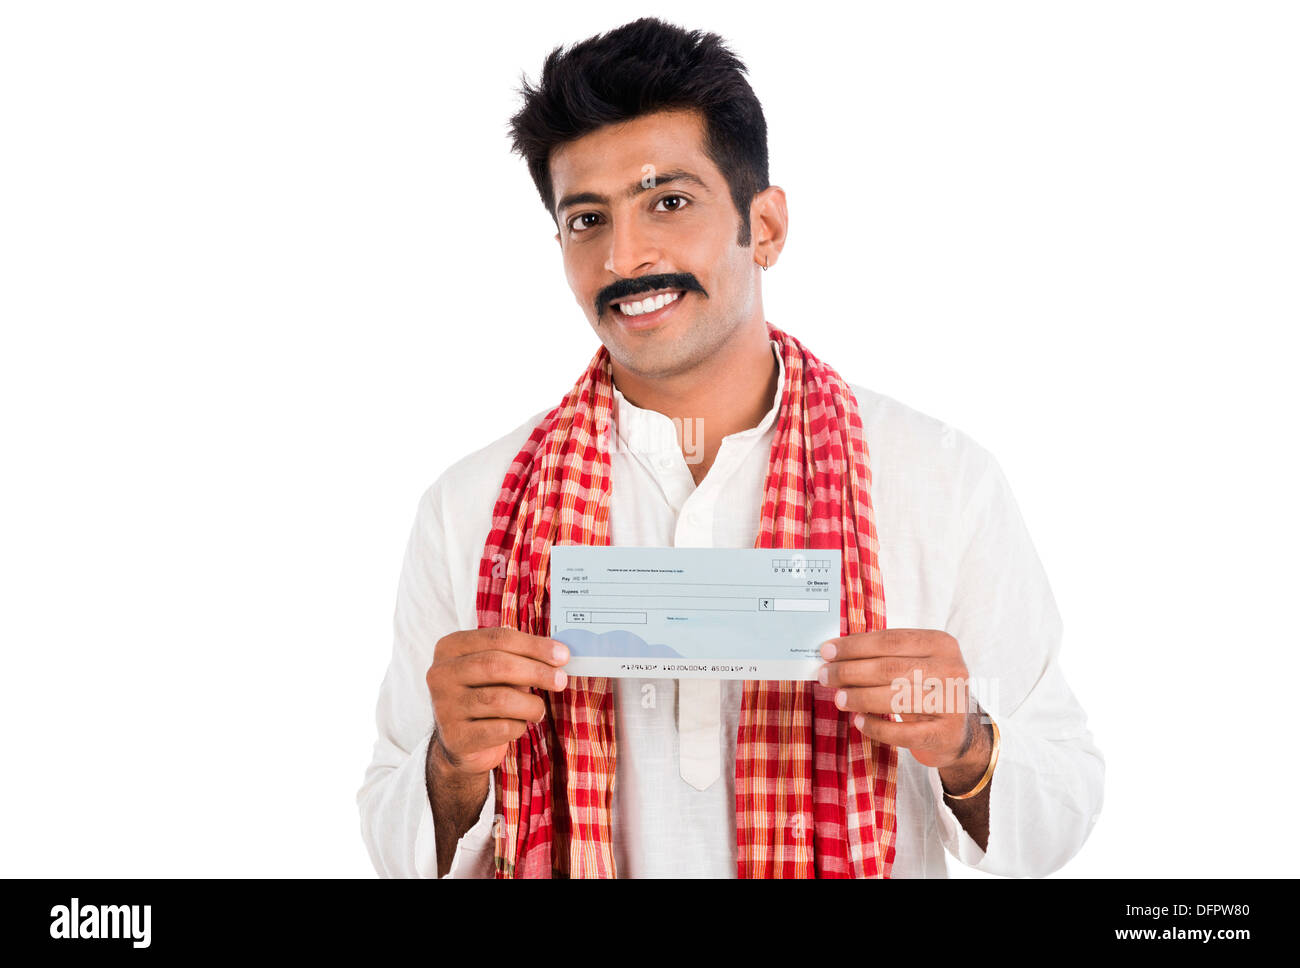 Ritratto di un uomo che mostra un assegno bancario e sorridente Foto Stock